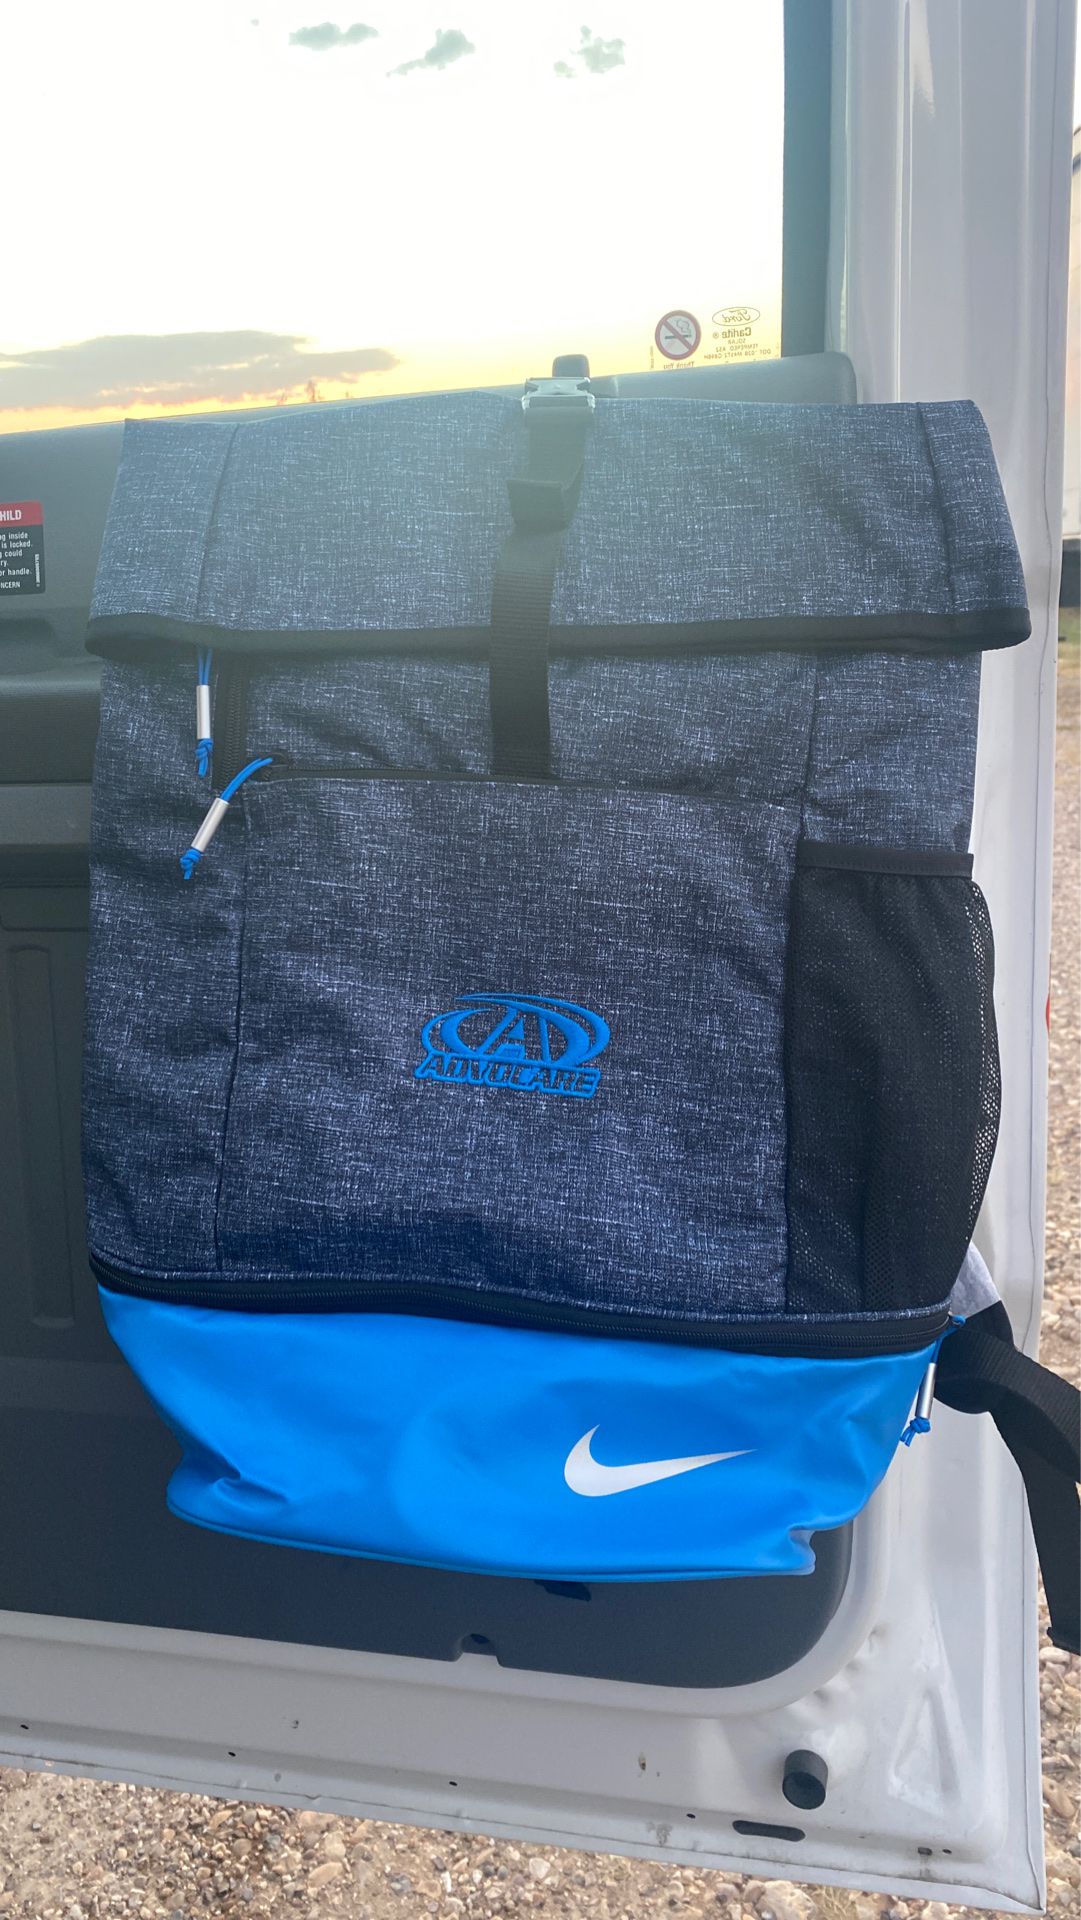 Nike backpack new